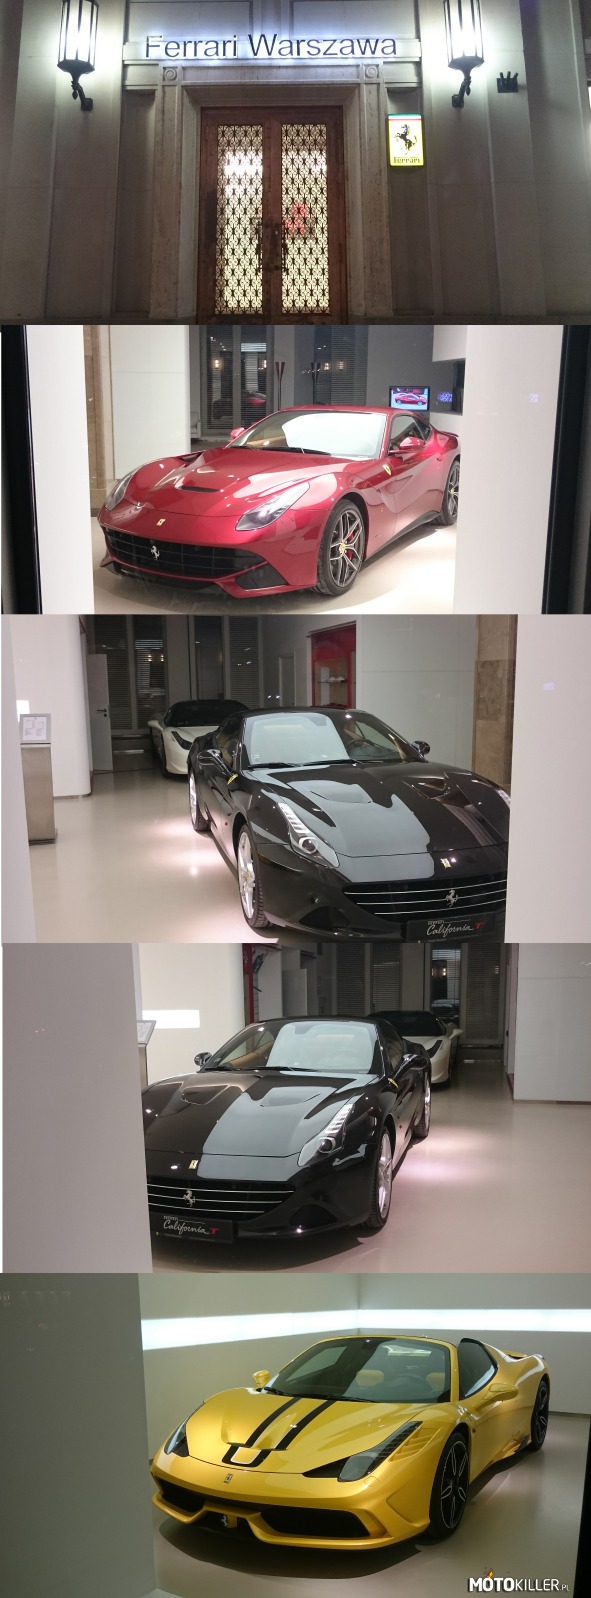 Z wizytą w salonie Ferrari – Akurat przechodziłem obok i chciałem sobie zakupić jakiś dupowóz, ale niestety było już zamknięte. 